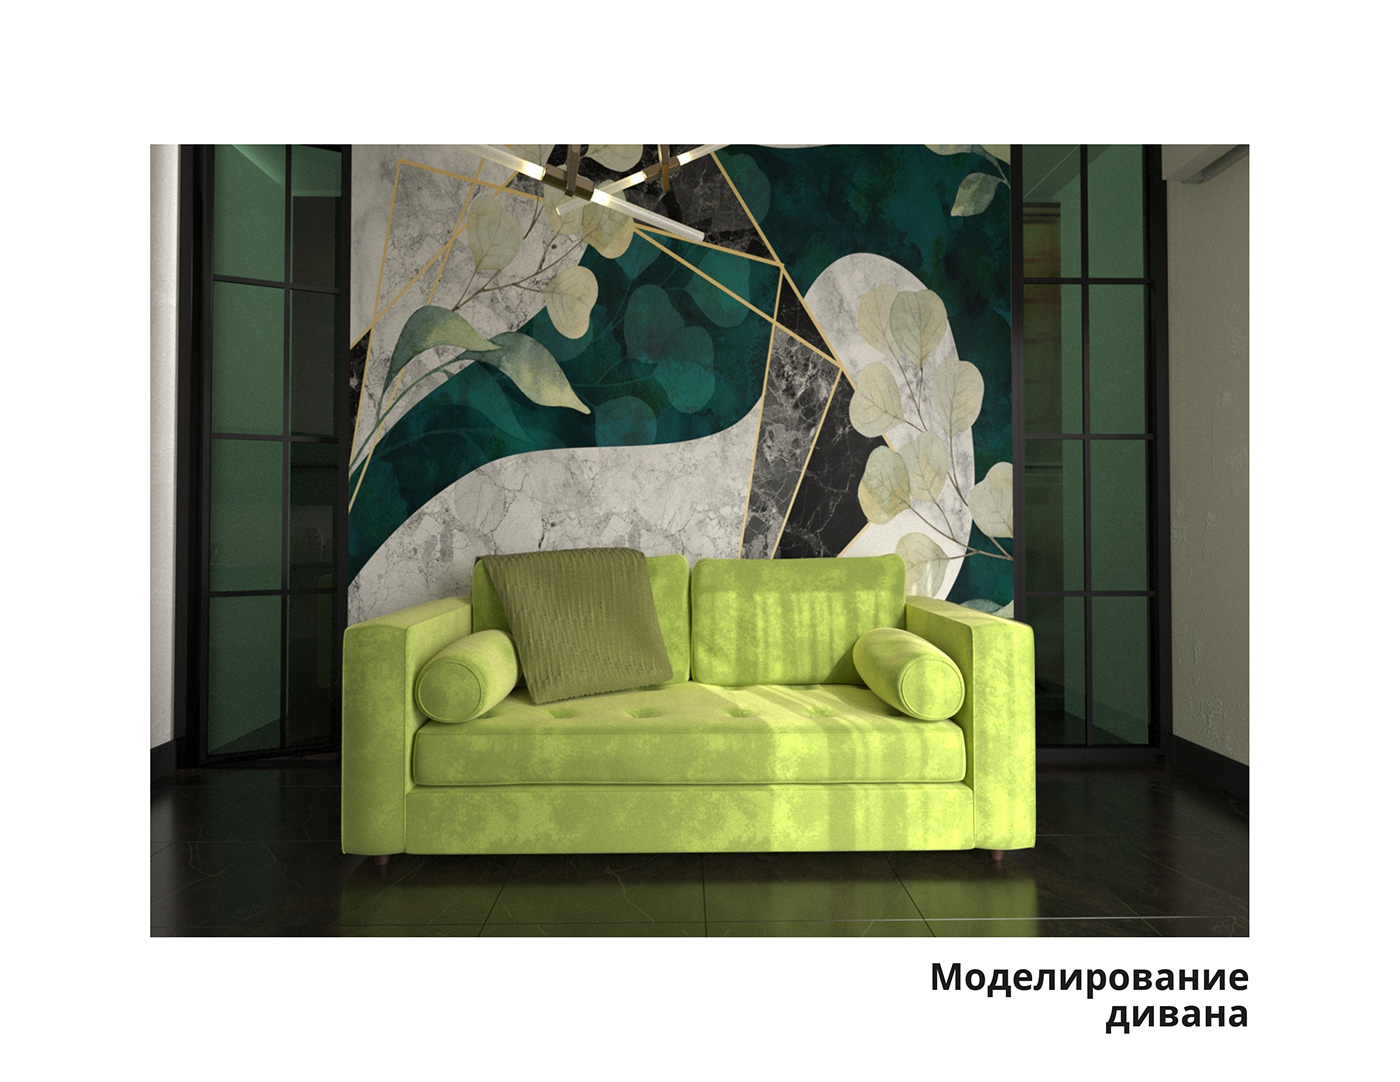 3D 3ds max 3dmodeling modeling визуализация sofa furniture 3дмоделирование